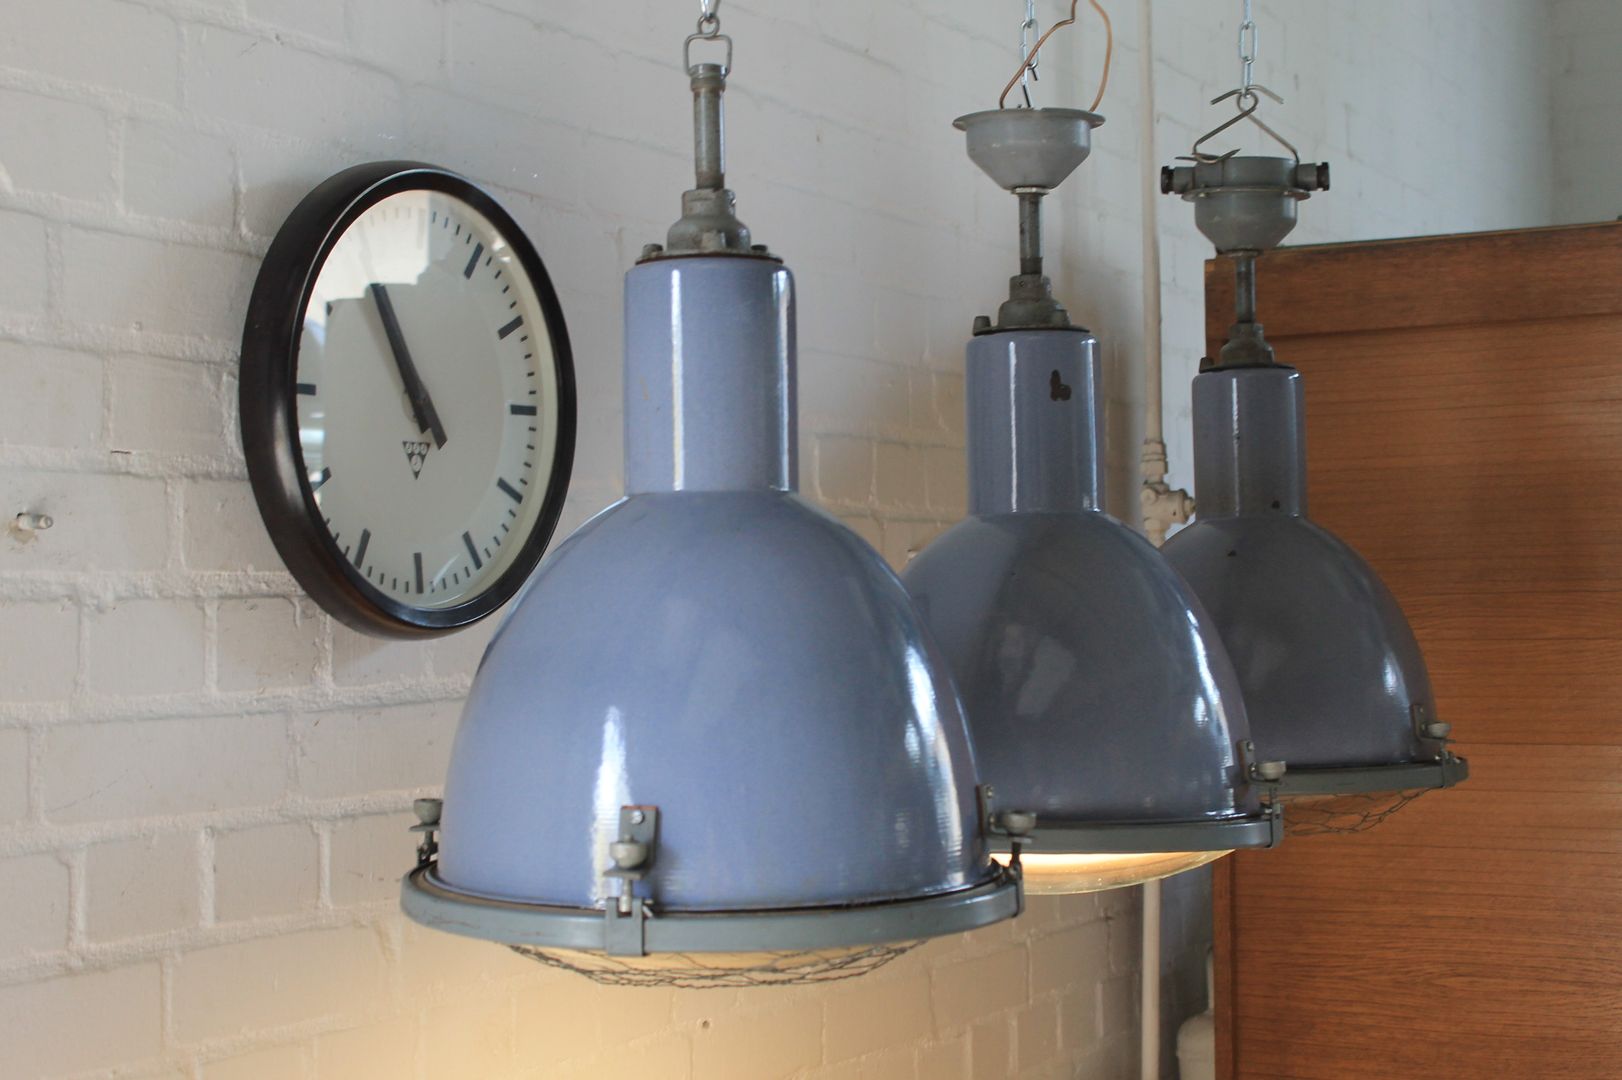 "DOVE" Fabriklampe Design Industrie Lampe Emaille Blau Vintage, Lux-Est Lux-Est مساحات تجارية معدن مكاتب ومحلات